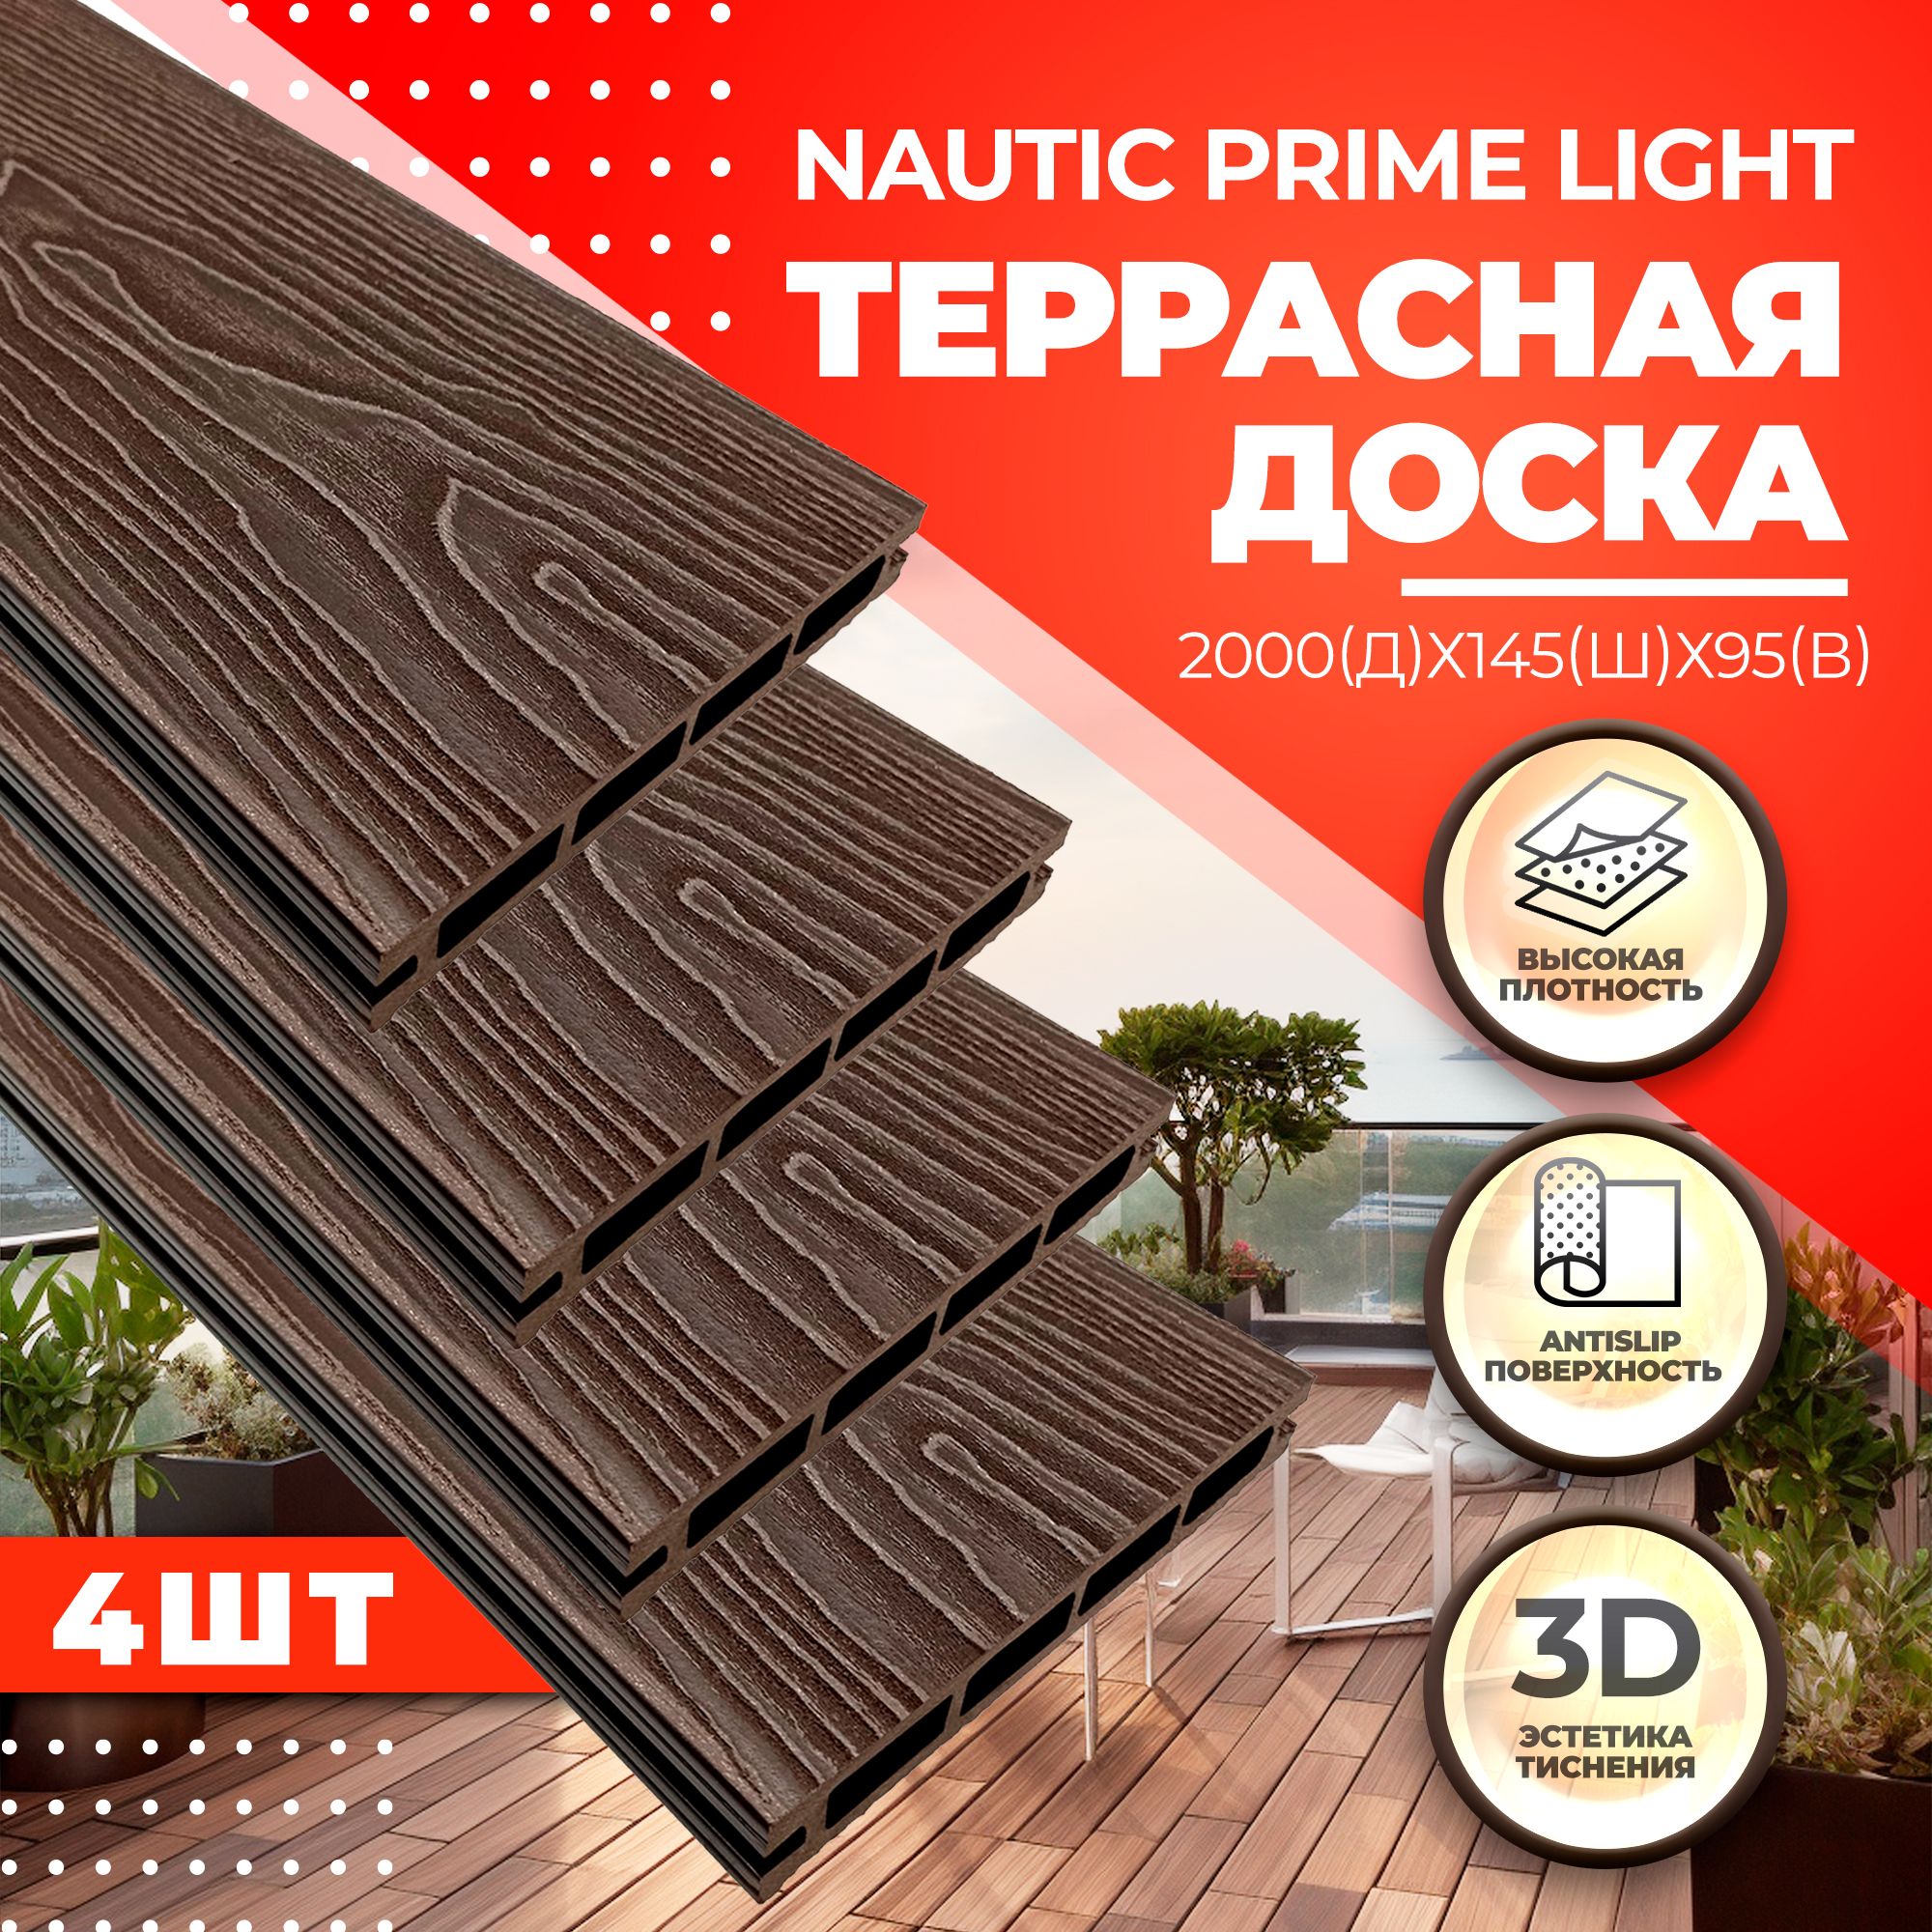 Комплект террасной доски NauticPrime Light Esthetic Wood CNPL2000V, венге, 4 шт.